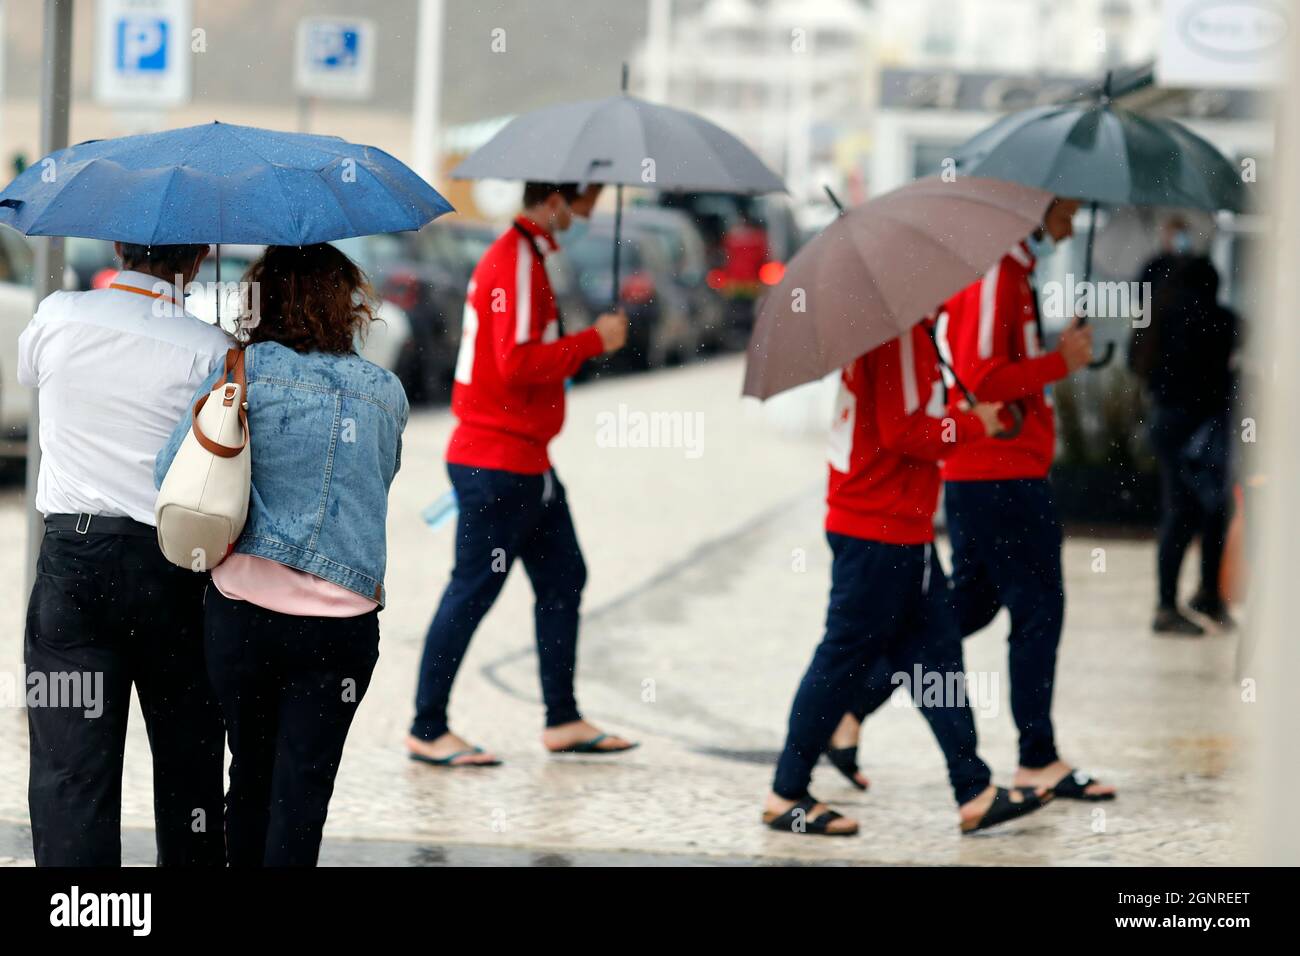 Menschen, die mit Regenschirm in regnerischen Tag Szene zu Fuß. Nazare. Portugal. Stockfoto